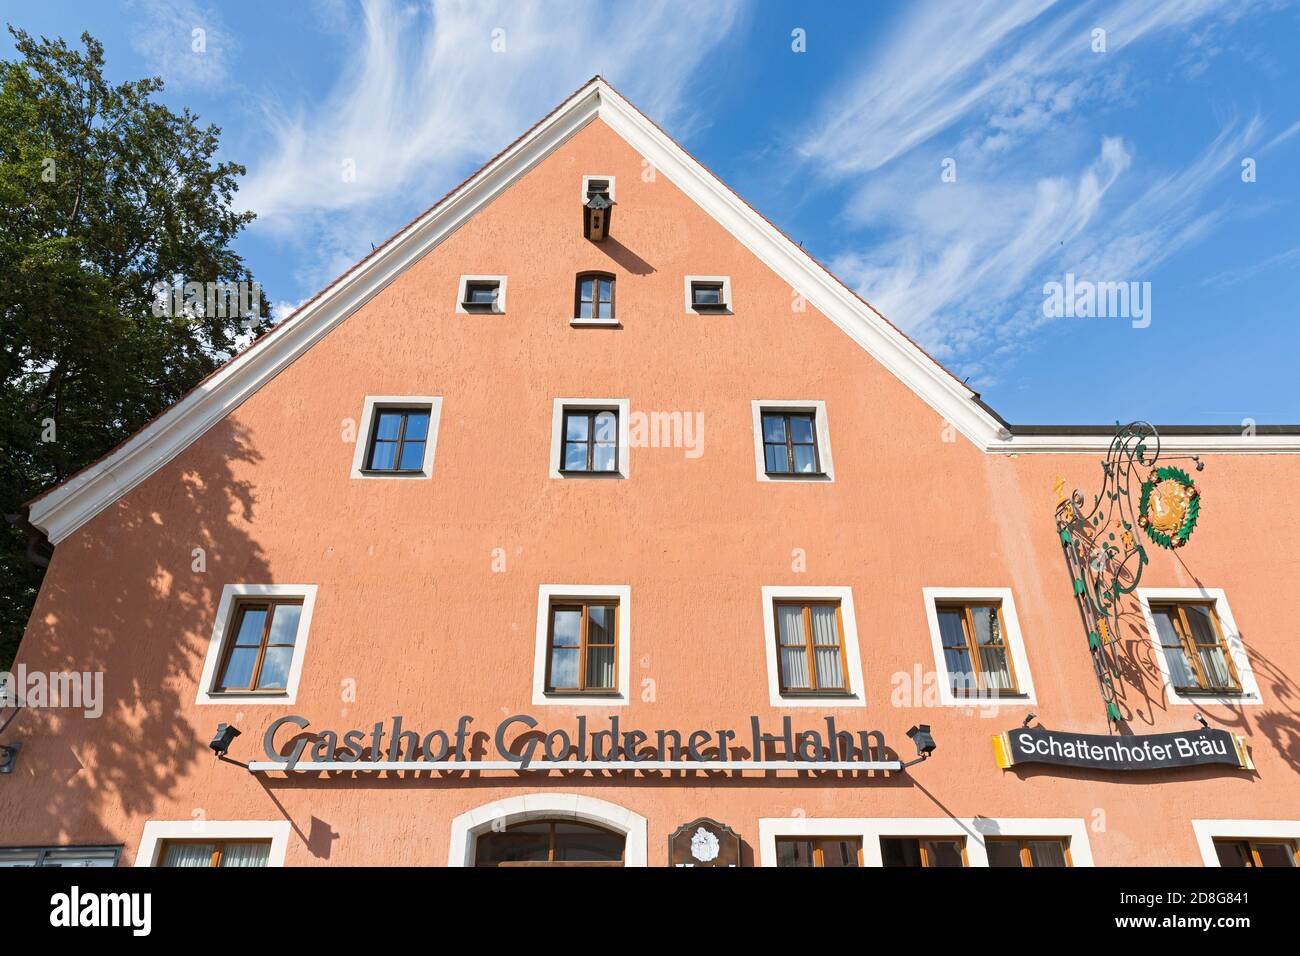 Beilngries, Hauptstrasse, Gasthof Goldener Hahn, Zunftschild Foto Stock